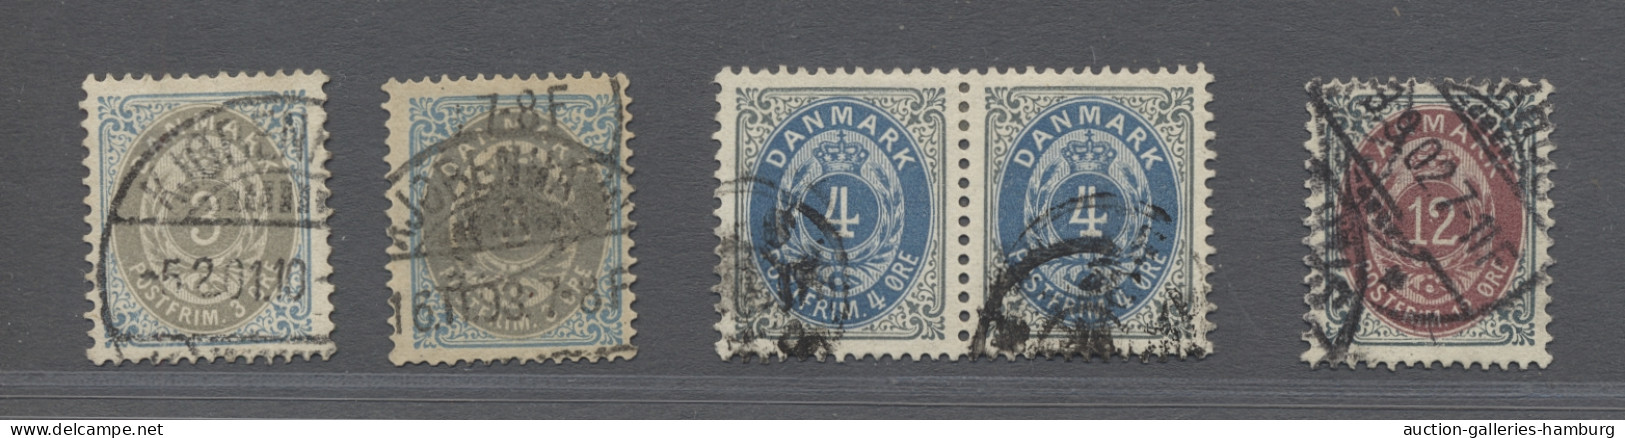 o/* Denmark: 1875ff., Ziffern im Rahmen / Tovarfende, Kronenwährung, 44 verschiedene